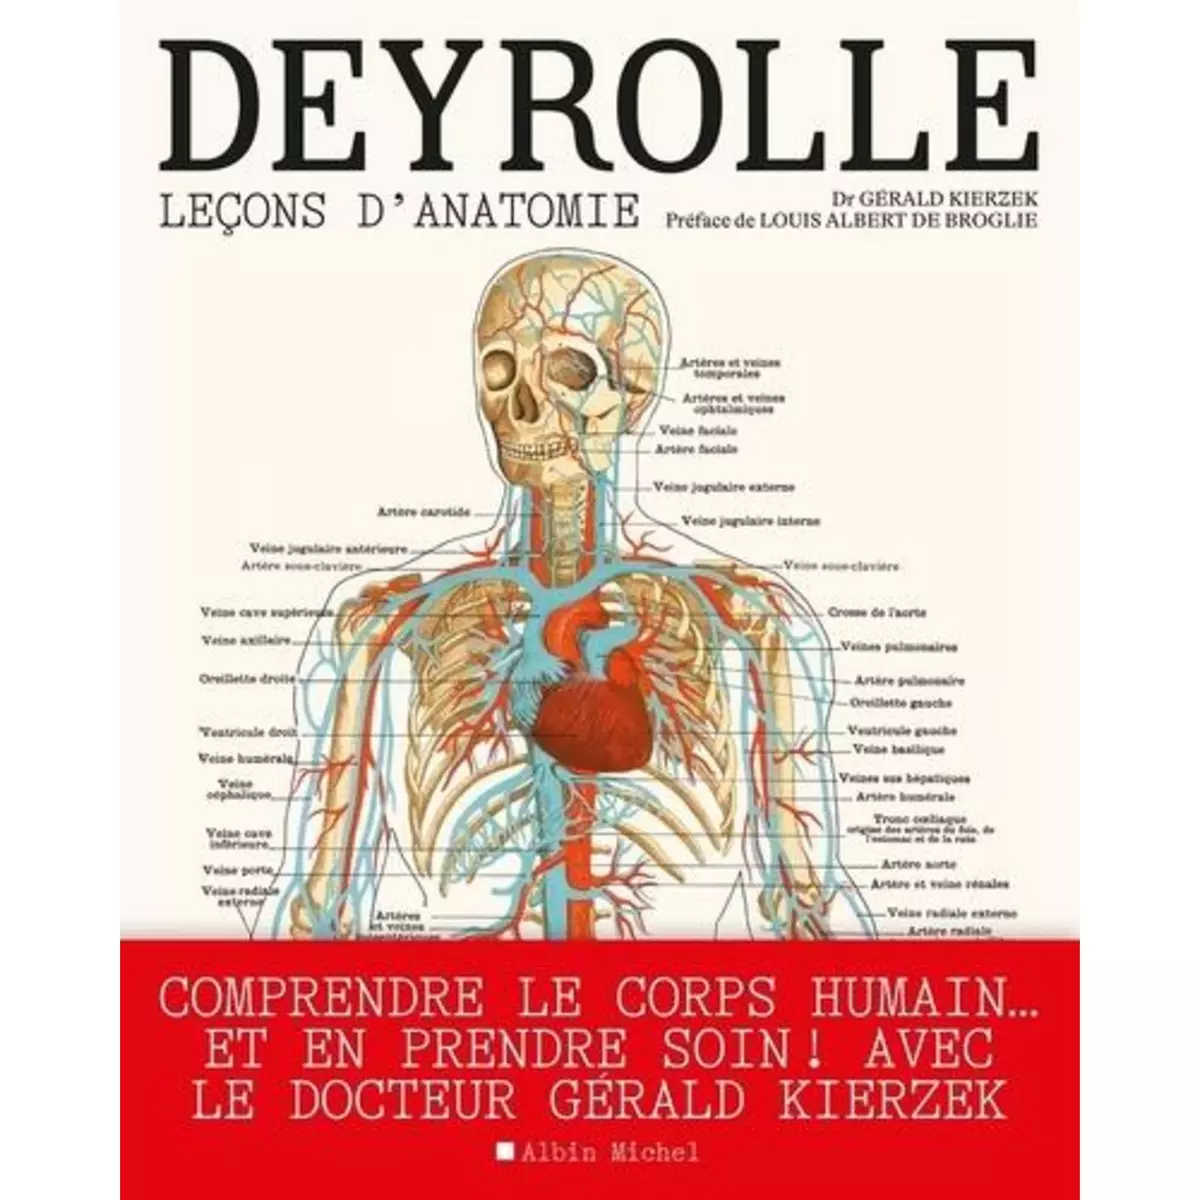  DEYROLLE. LECONS D'ANATOMIE, Kierzek Gérald